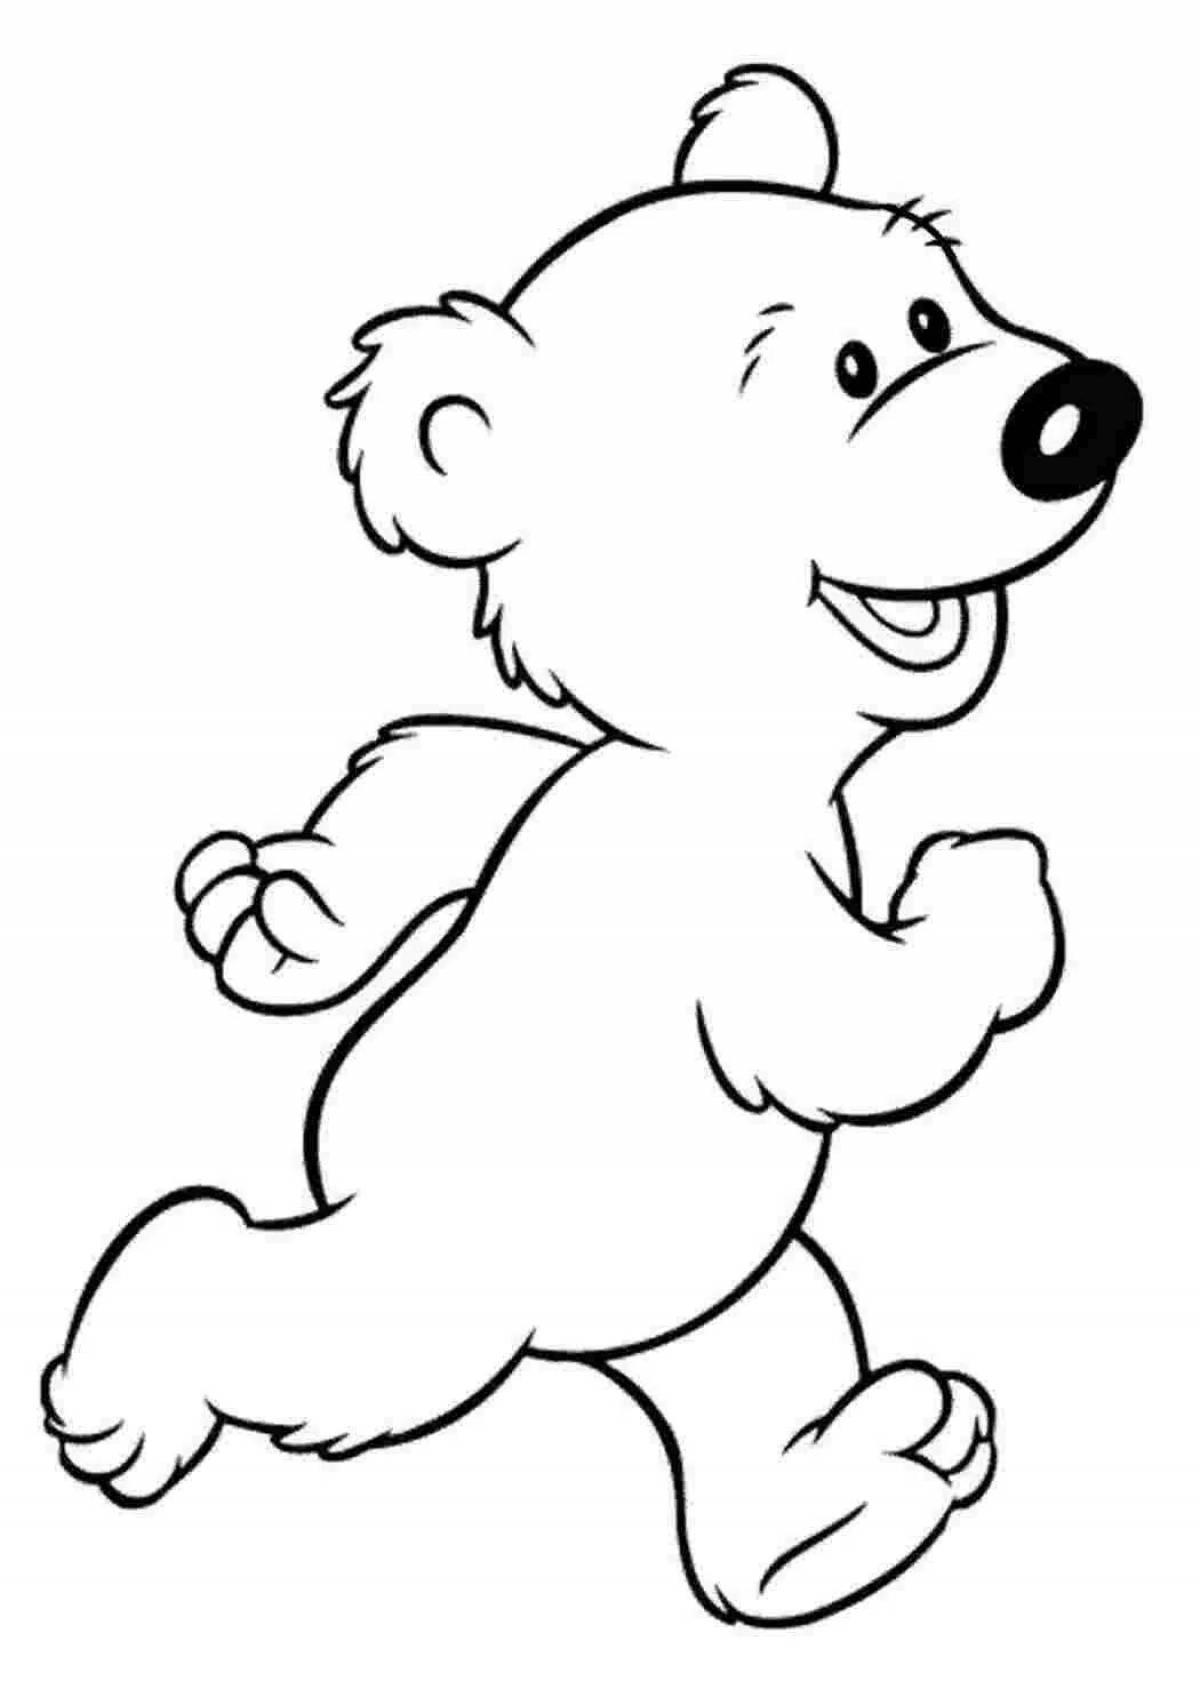 Черно белые картинки для детей раскраска. Контур медведя сбоку. Медведь раскраска. Раскраска. Медвежонок. Медведь раскраска для детей.